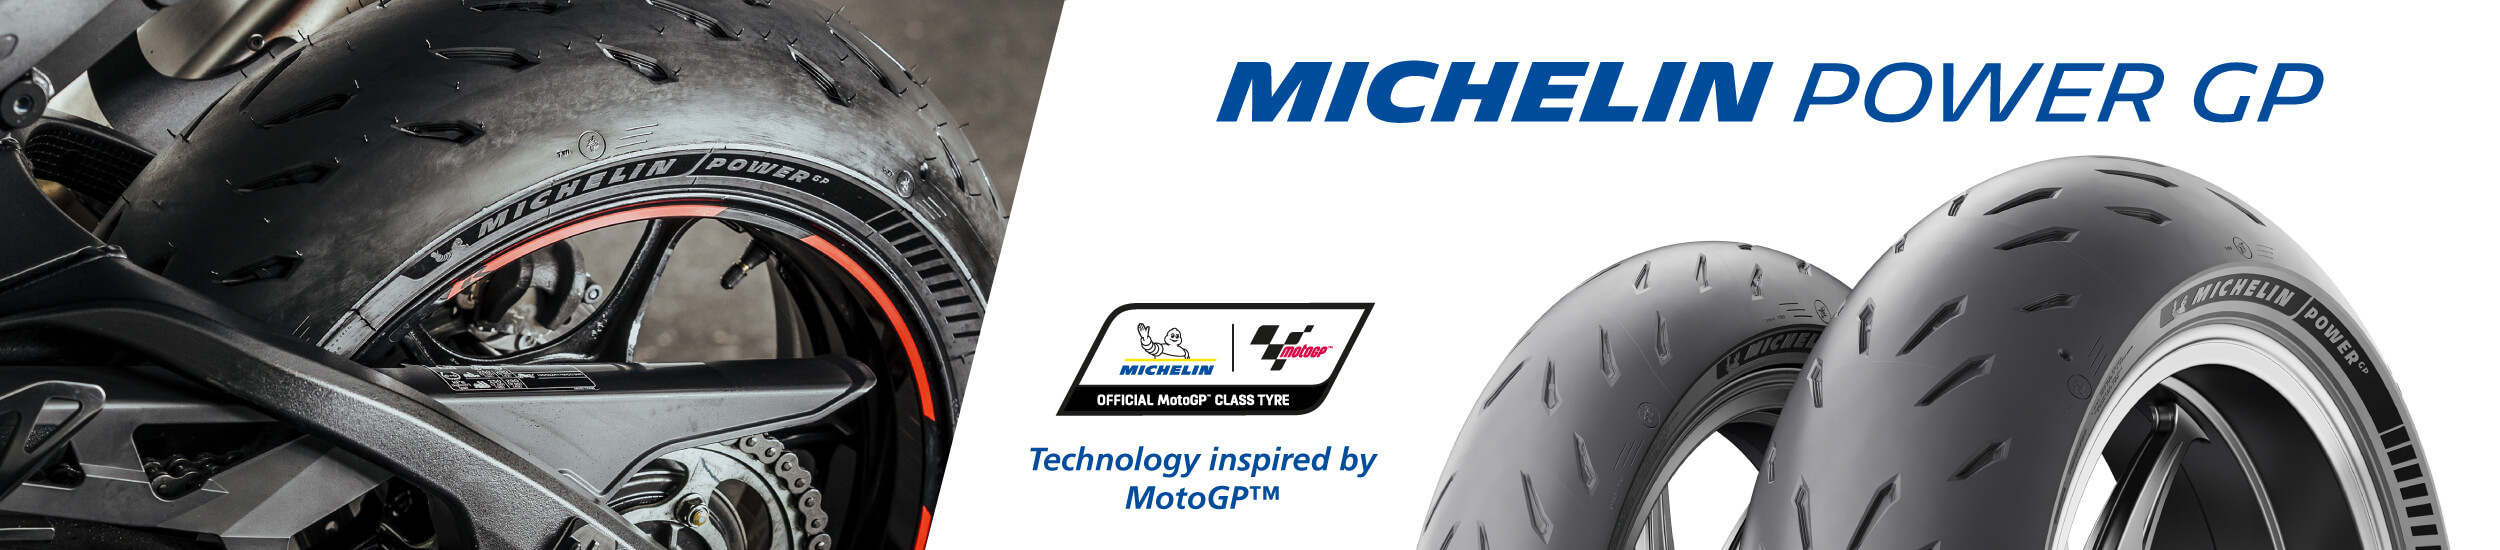 Michelin Power GP Banner